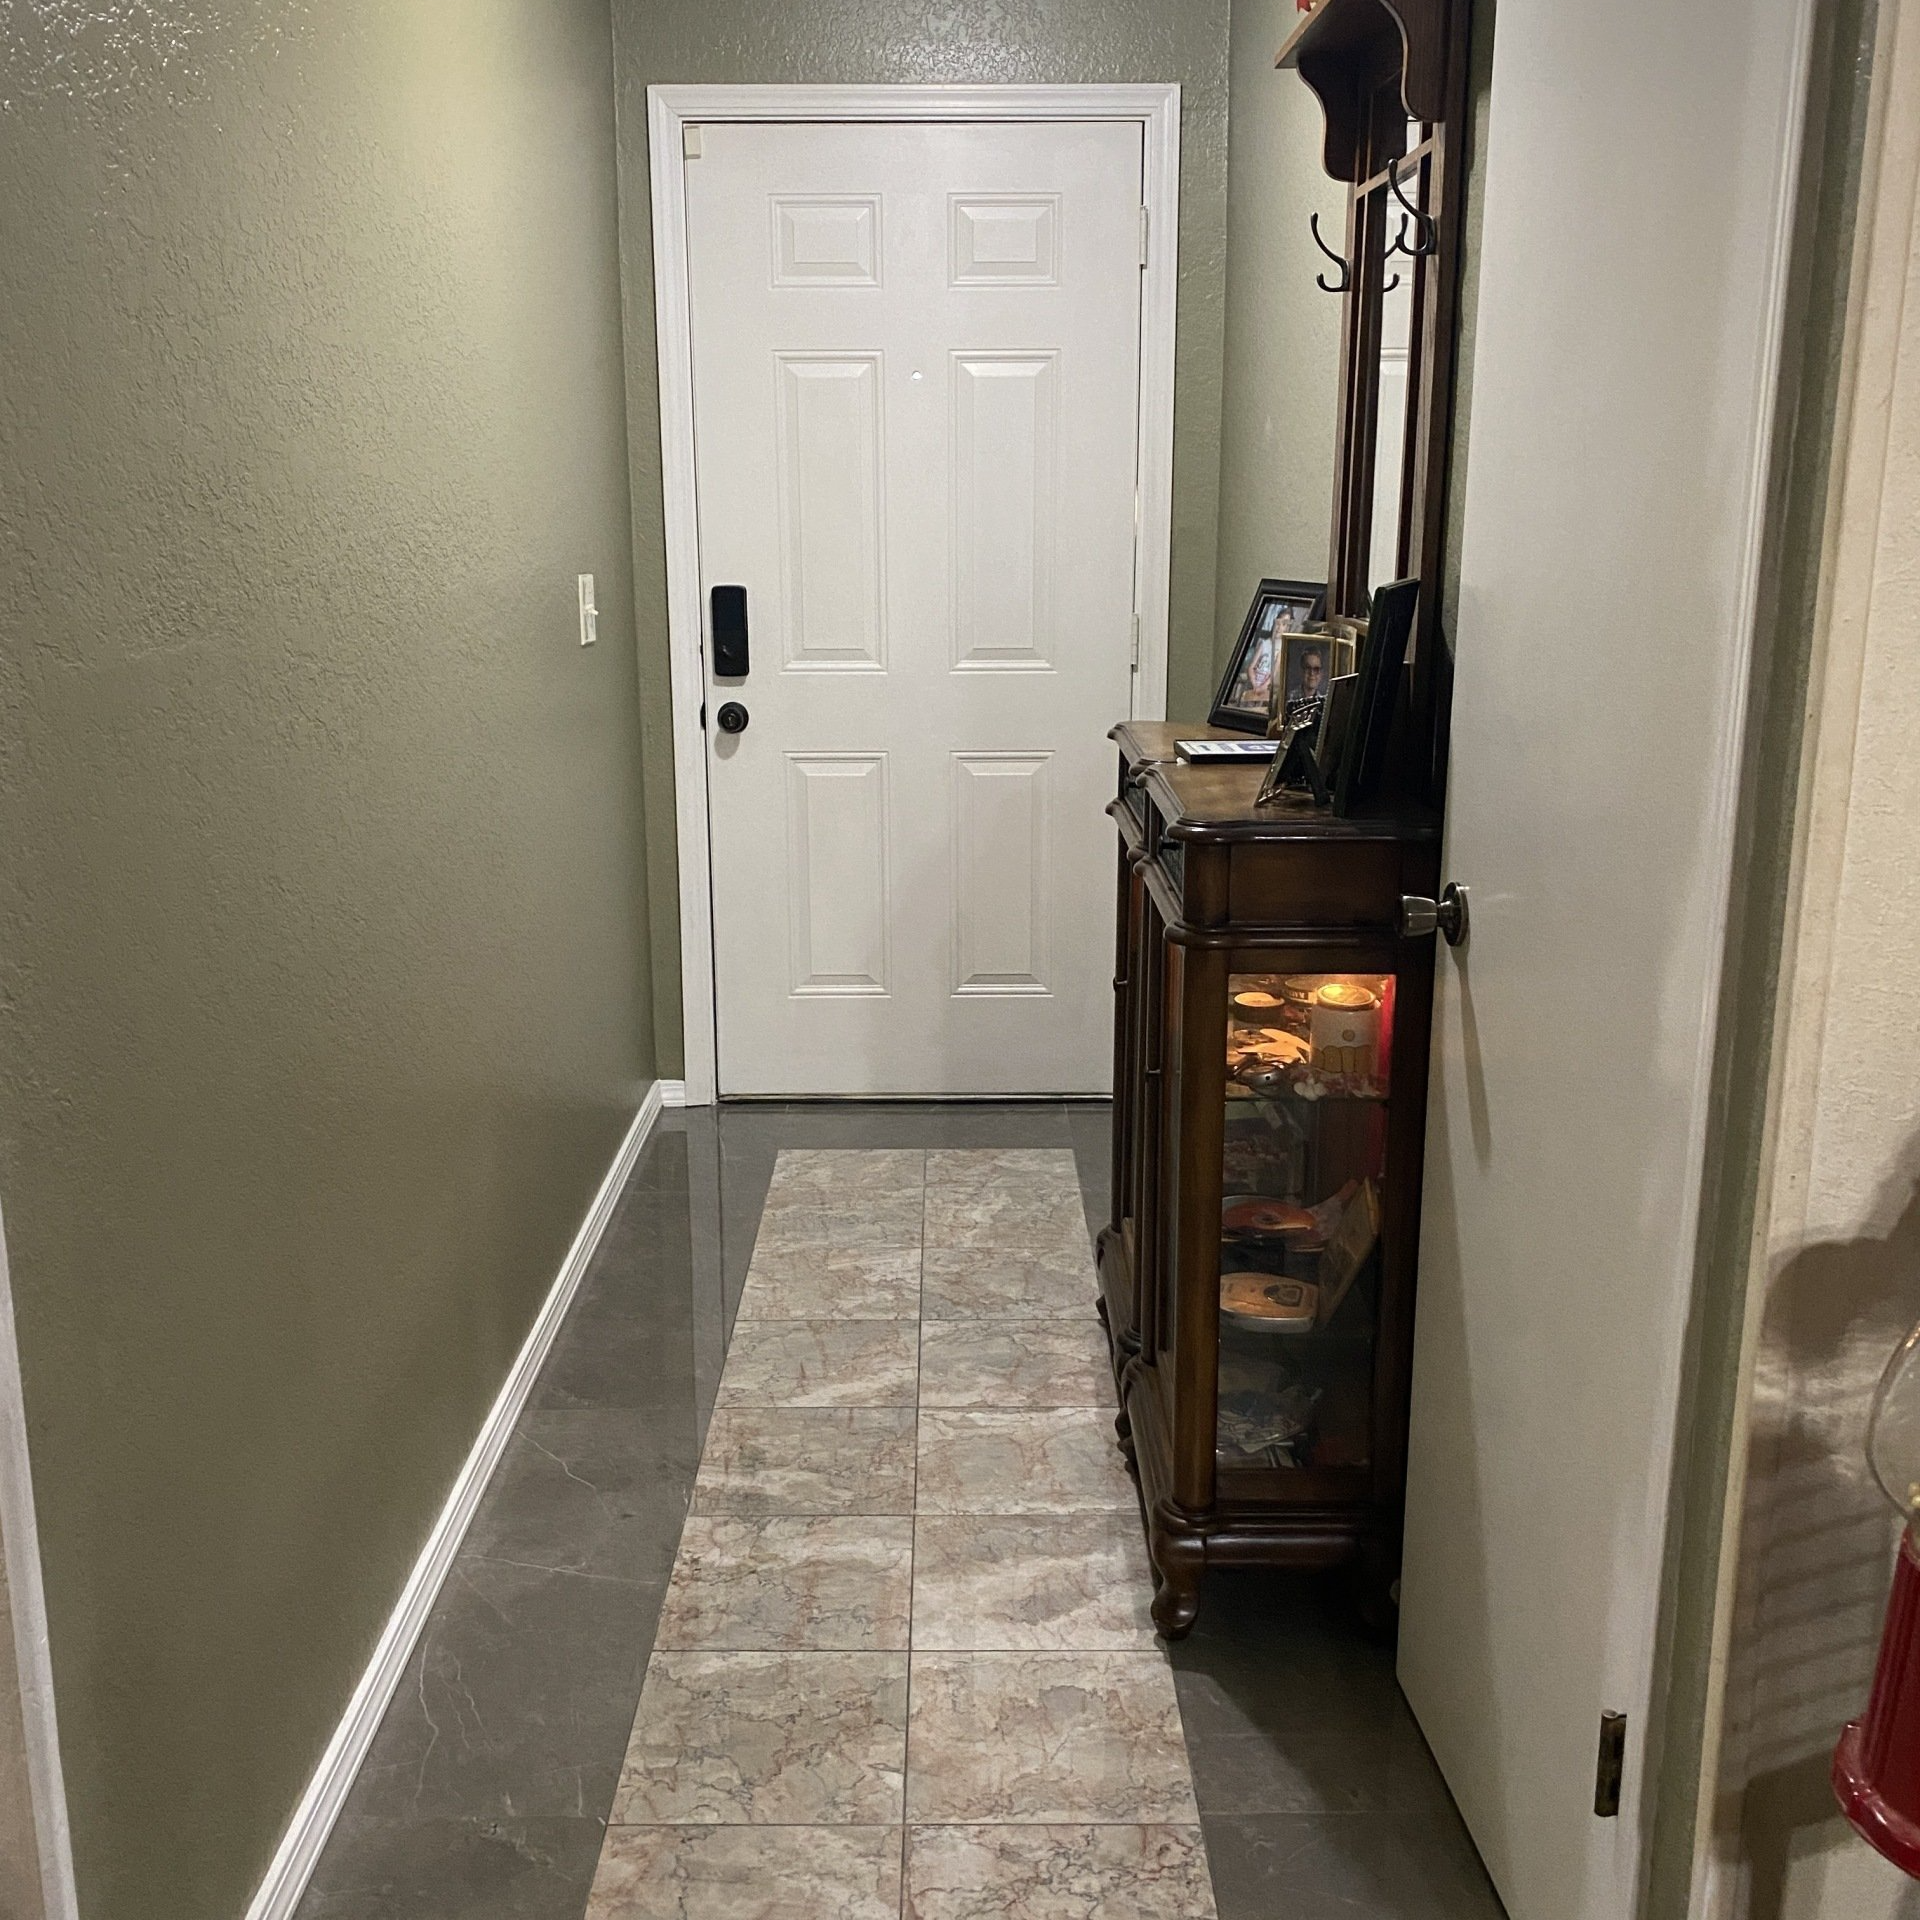 Remodeled kitchen with backsplash tile and tile flooring